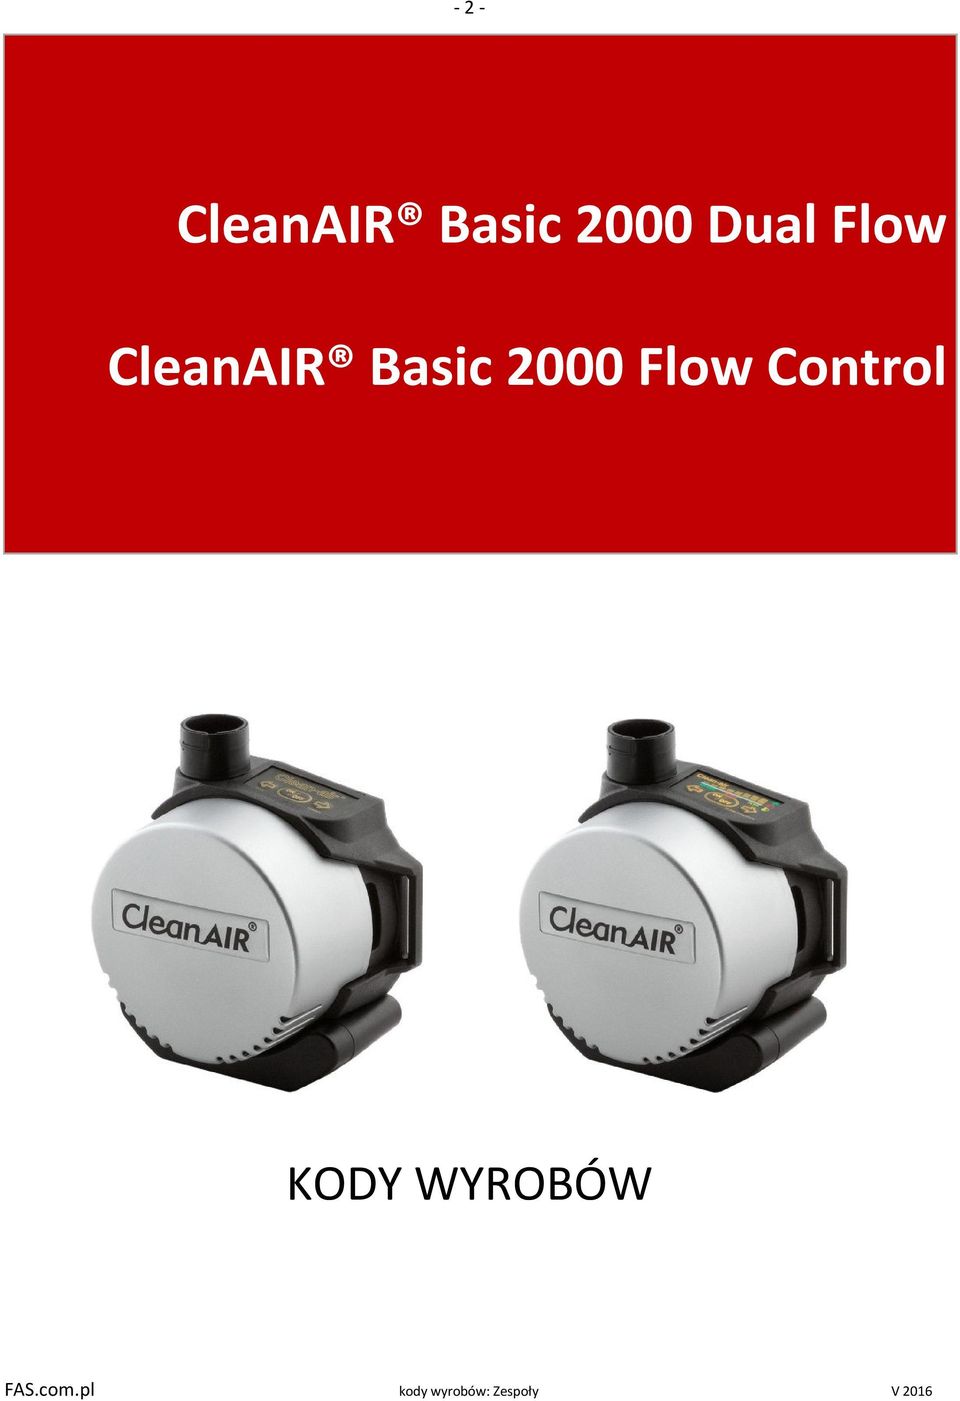 CleanAIR Basic 2000